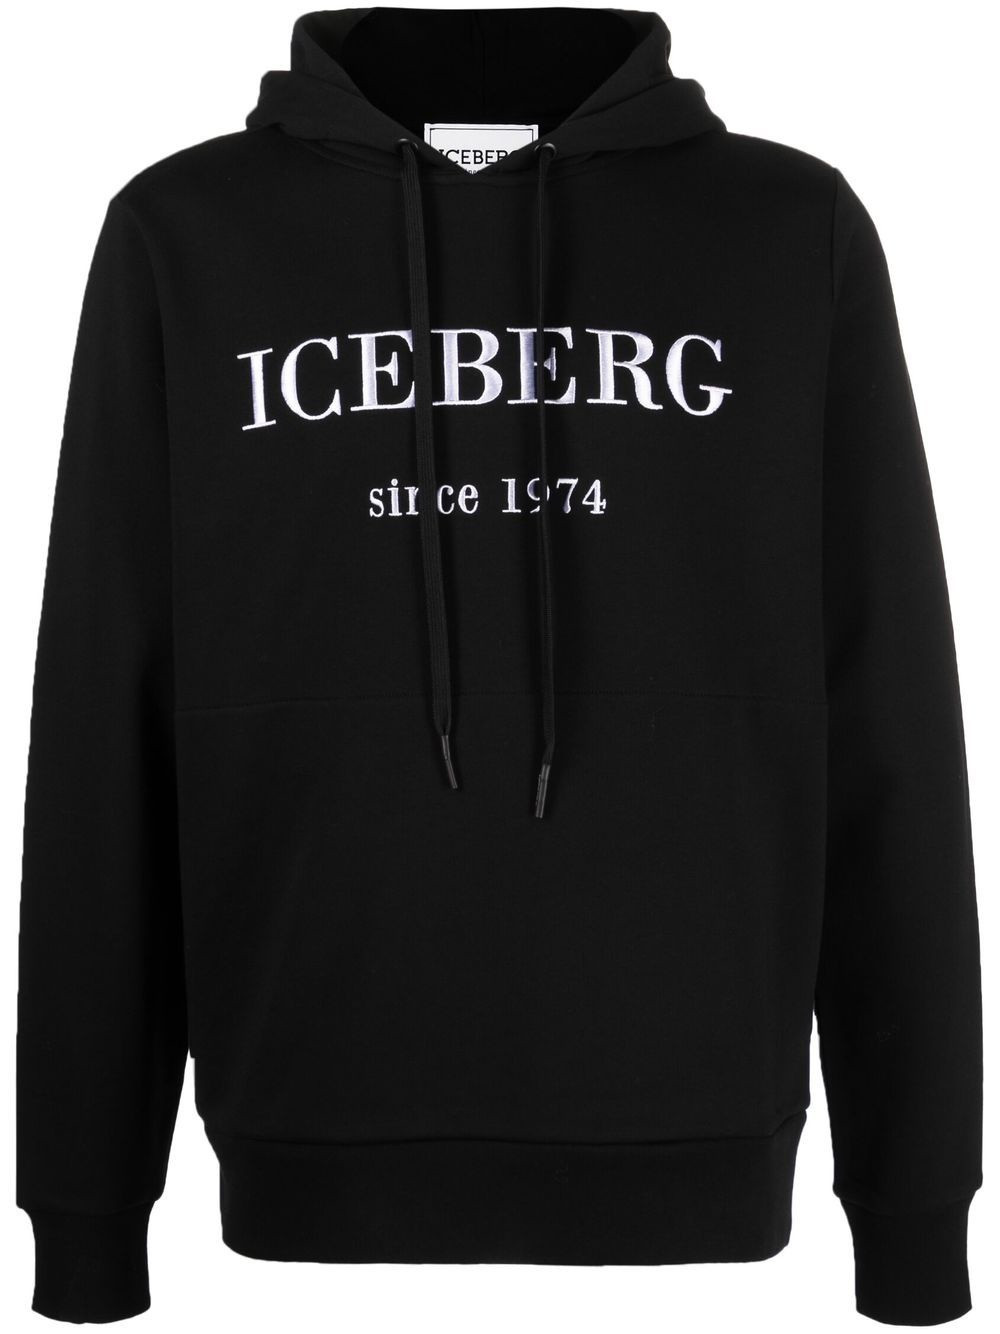 Afbeelding van Iceberg Hoodie branding